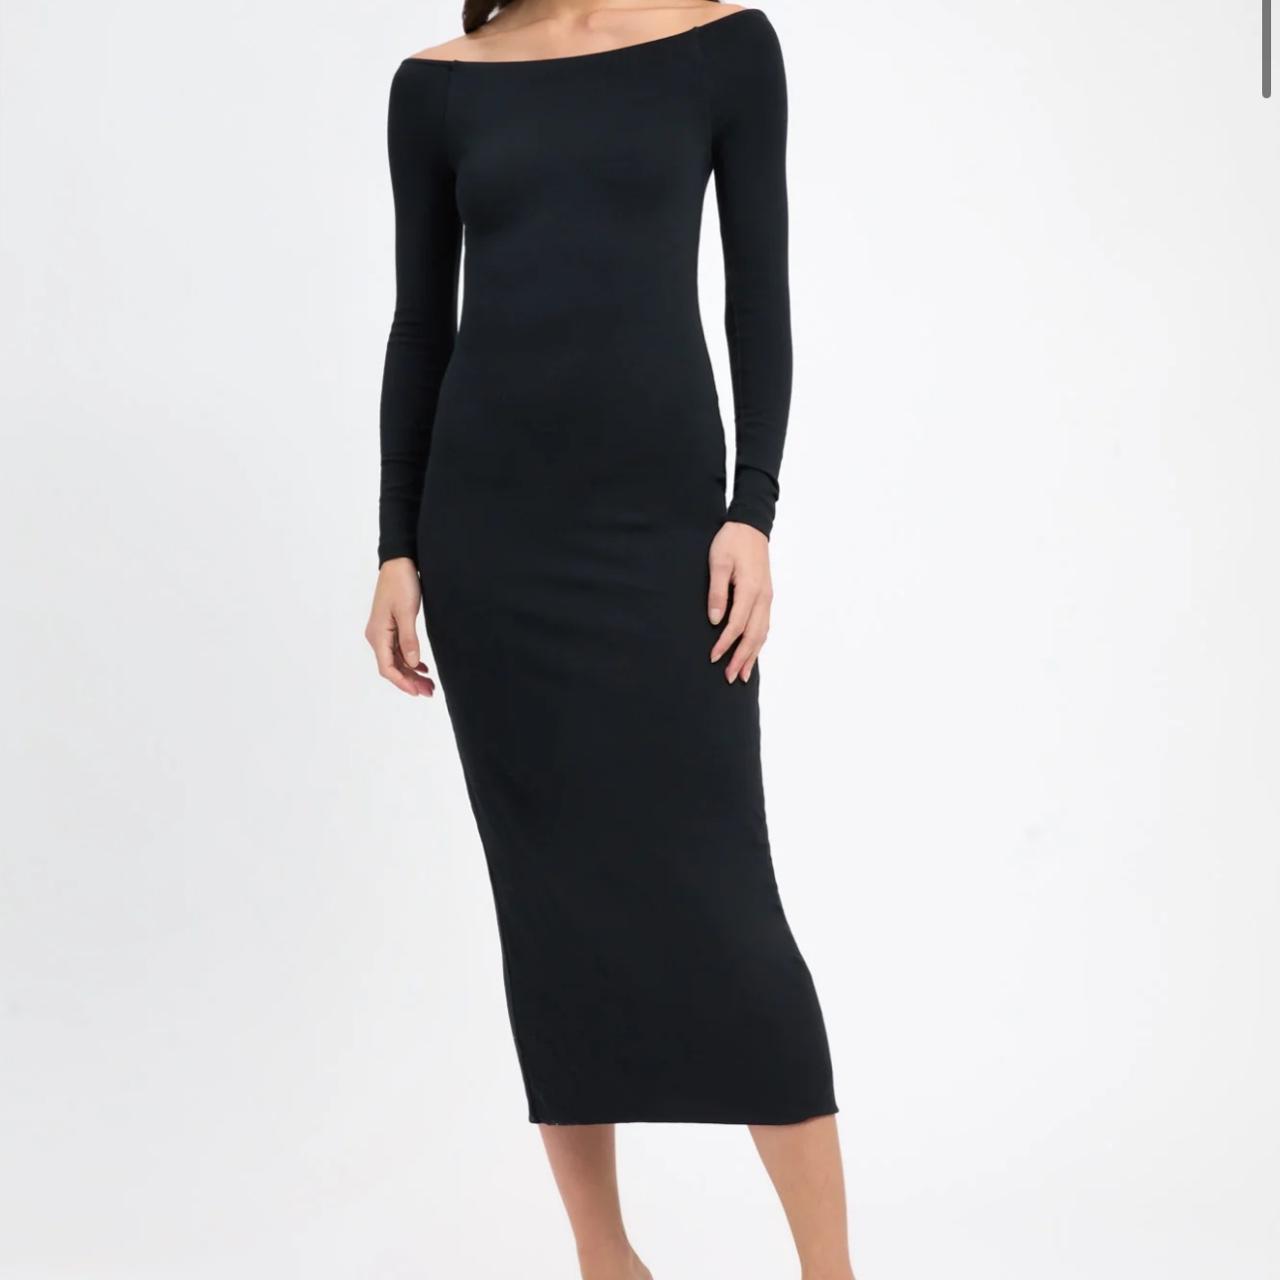 Kookai Ellie midi dress (sold out online) 💫 🩷 size... - Depop